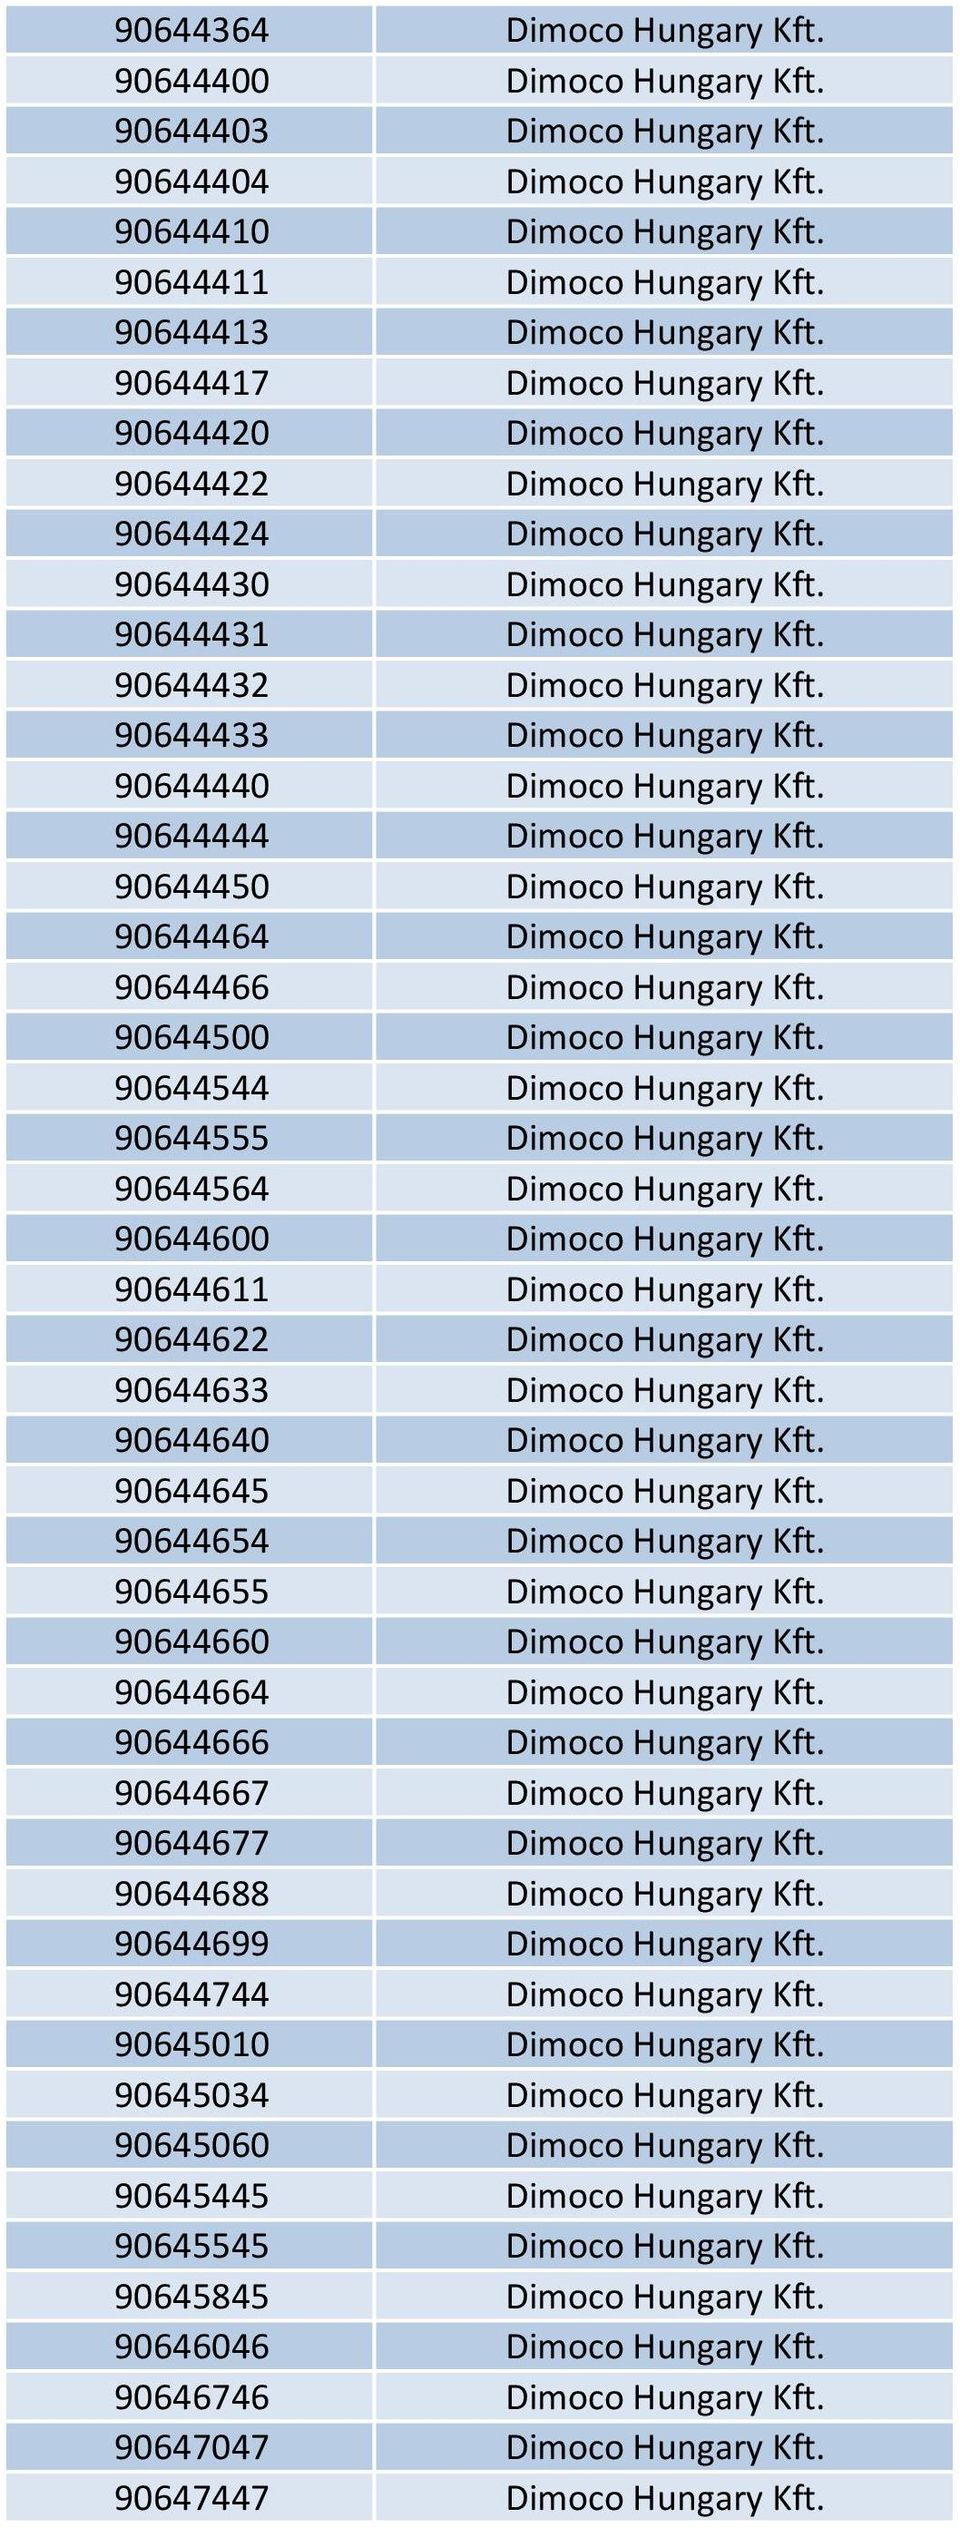 90644431 Dimoco Hungary Kft. 90644432 Dimoco Hungary Kft. 90644433 Dimoco Hungary Kft. 90644440 Dimoco Hungary Kft. 90644444 Dimoco Hungary Kft. 90644450 Dimoco Hungary Kft.